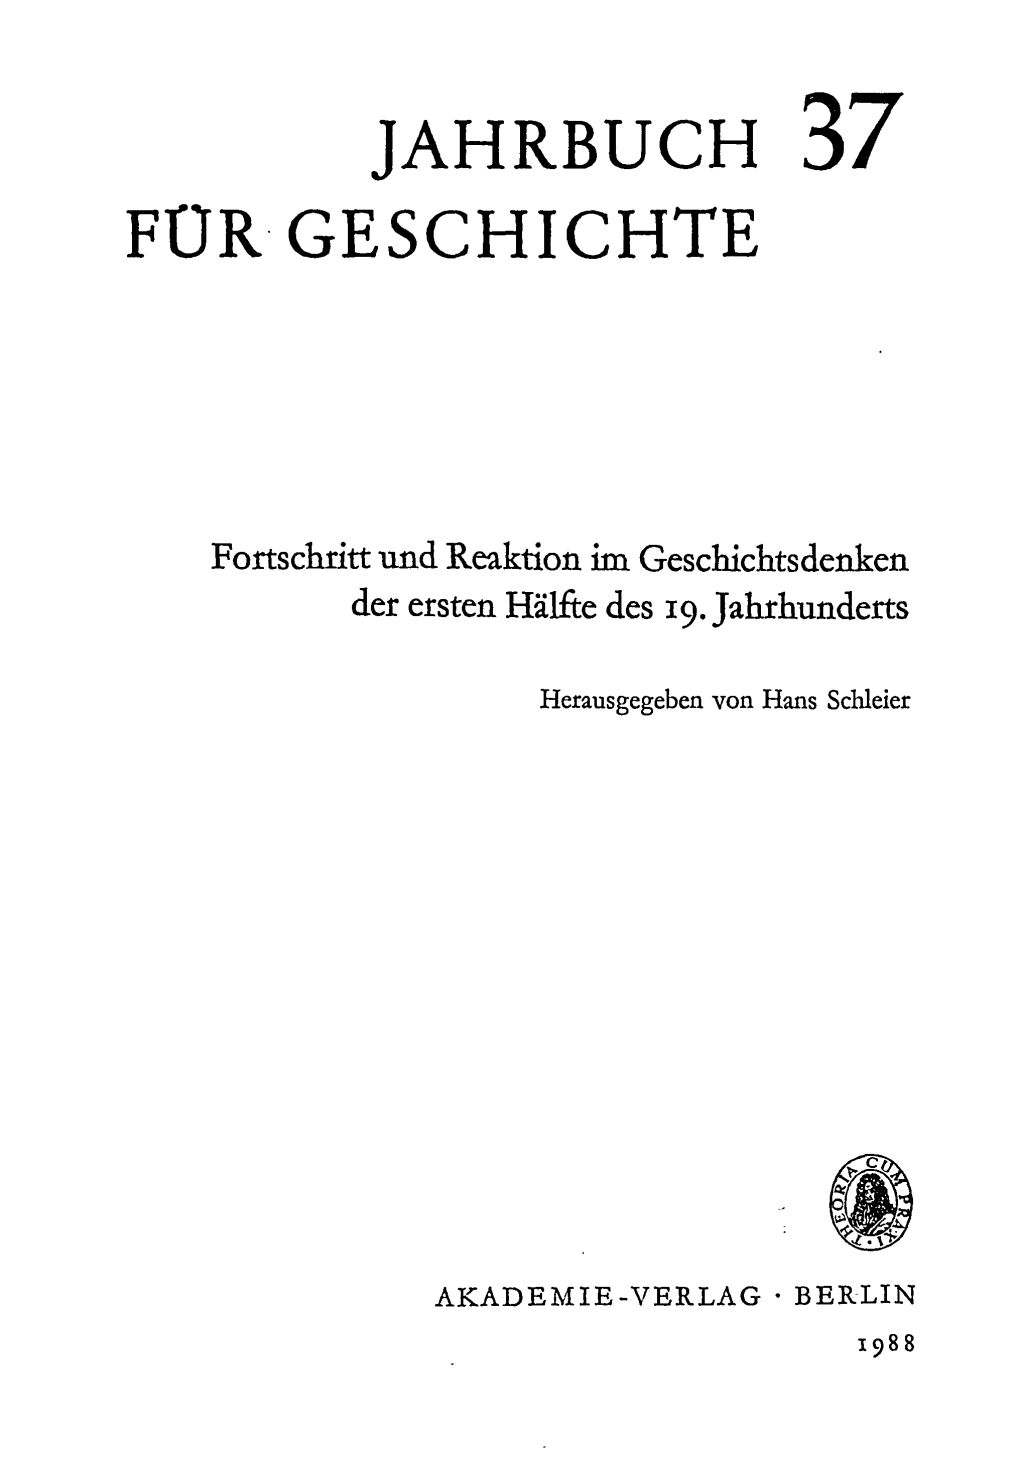 Herausgegeben Von Hans Schleier AKADEMIE-VERLAG " BERLIN